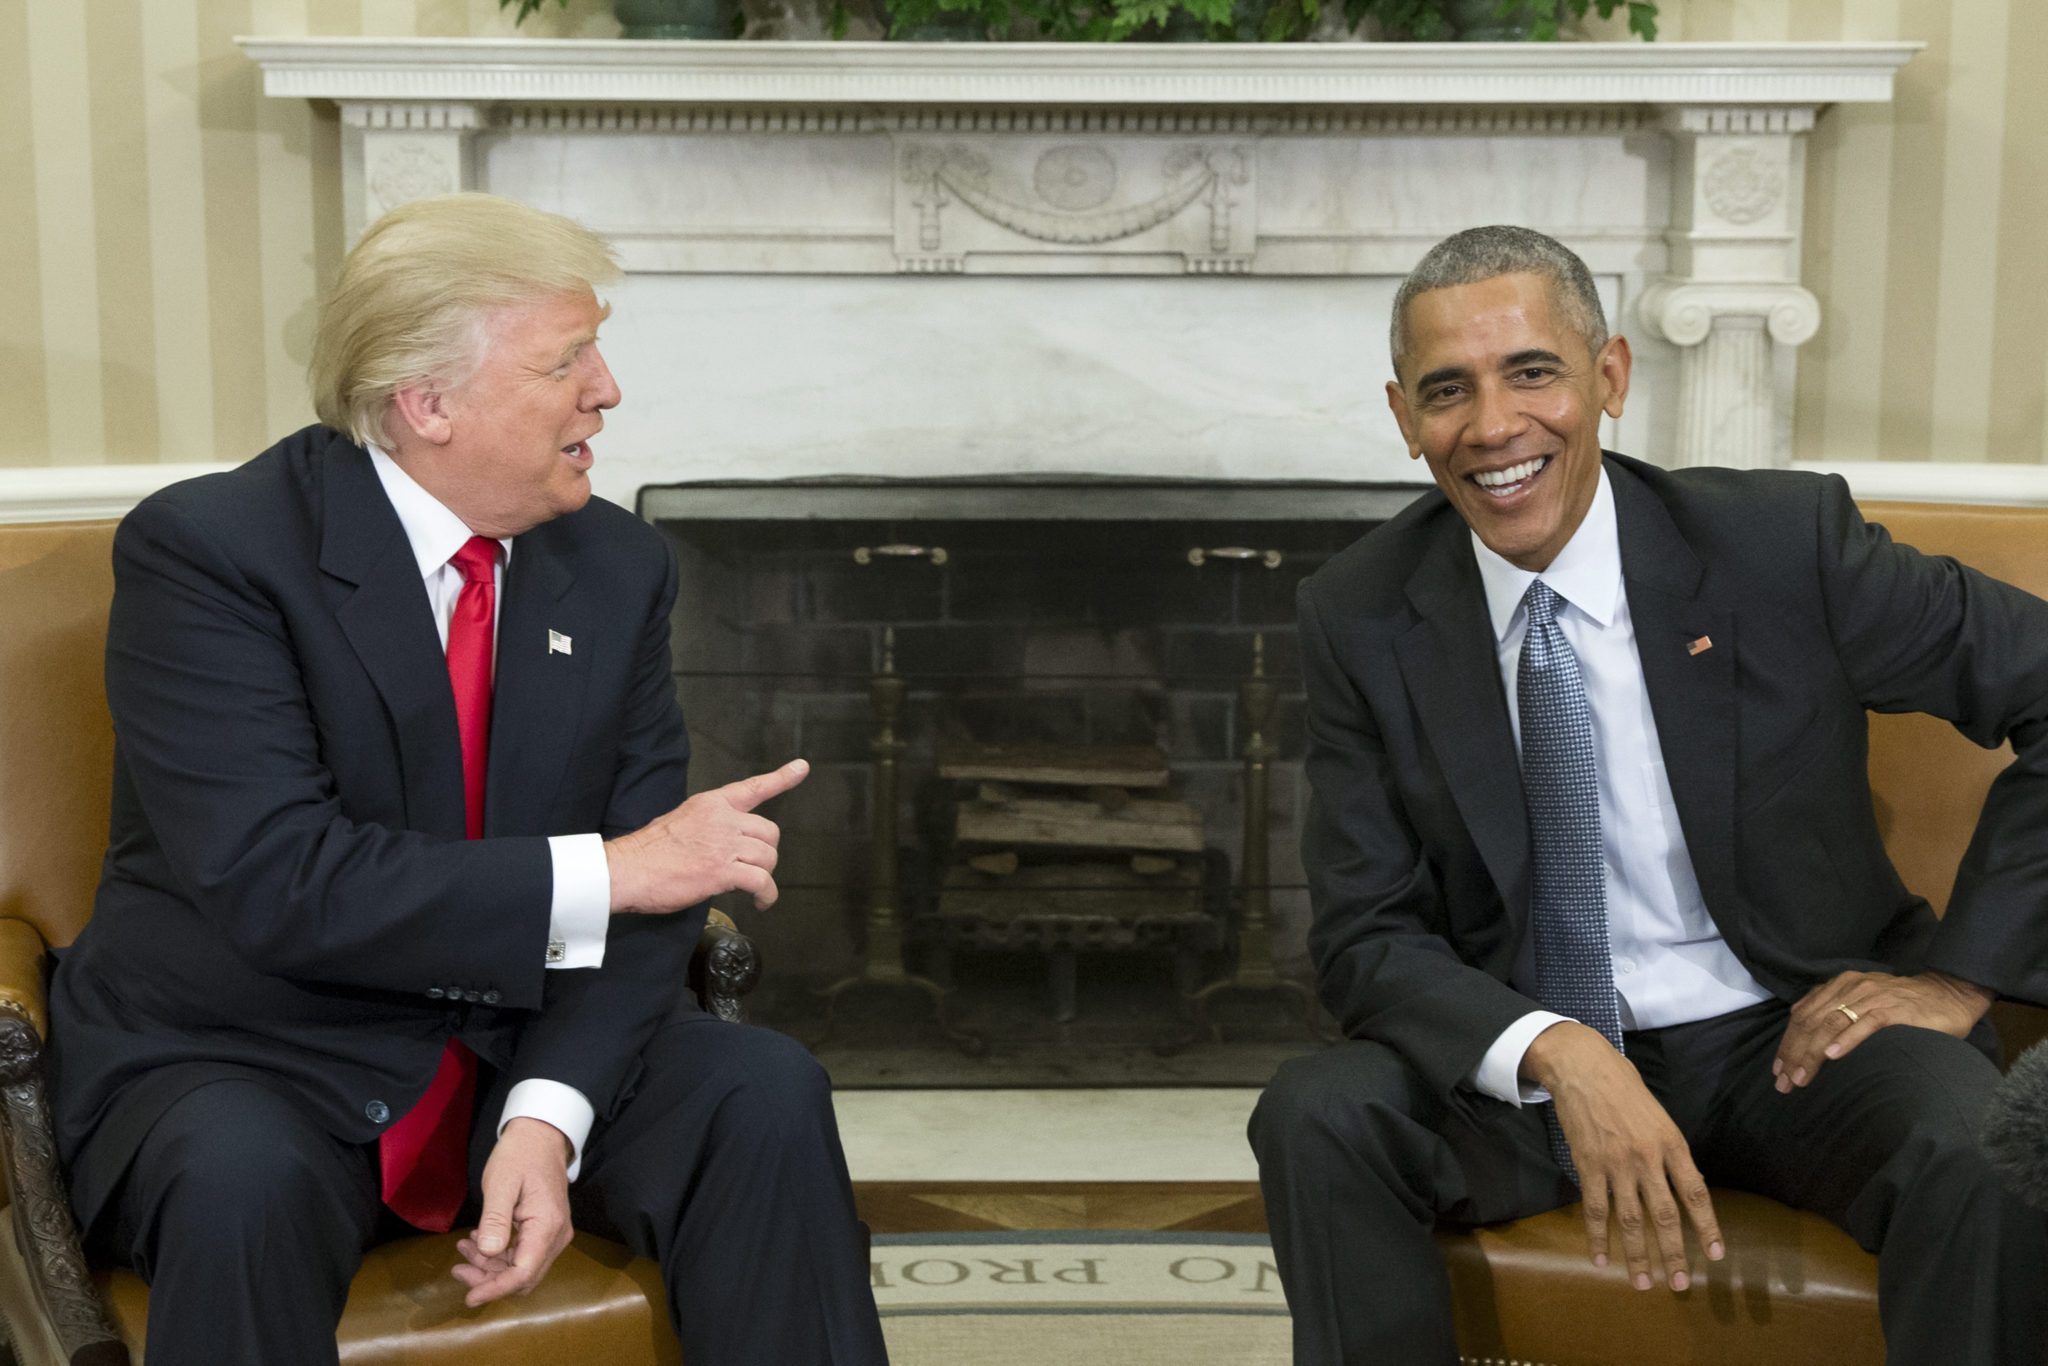 Spotkanie prezydenta Baracka Obamy z nowym prezydentem Donaldem Trumpem w Białm Domu.  Fot. PAP/EPA/MICHAEL REYNOLDS 